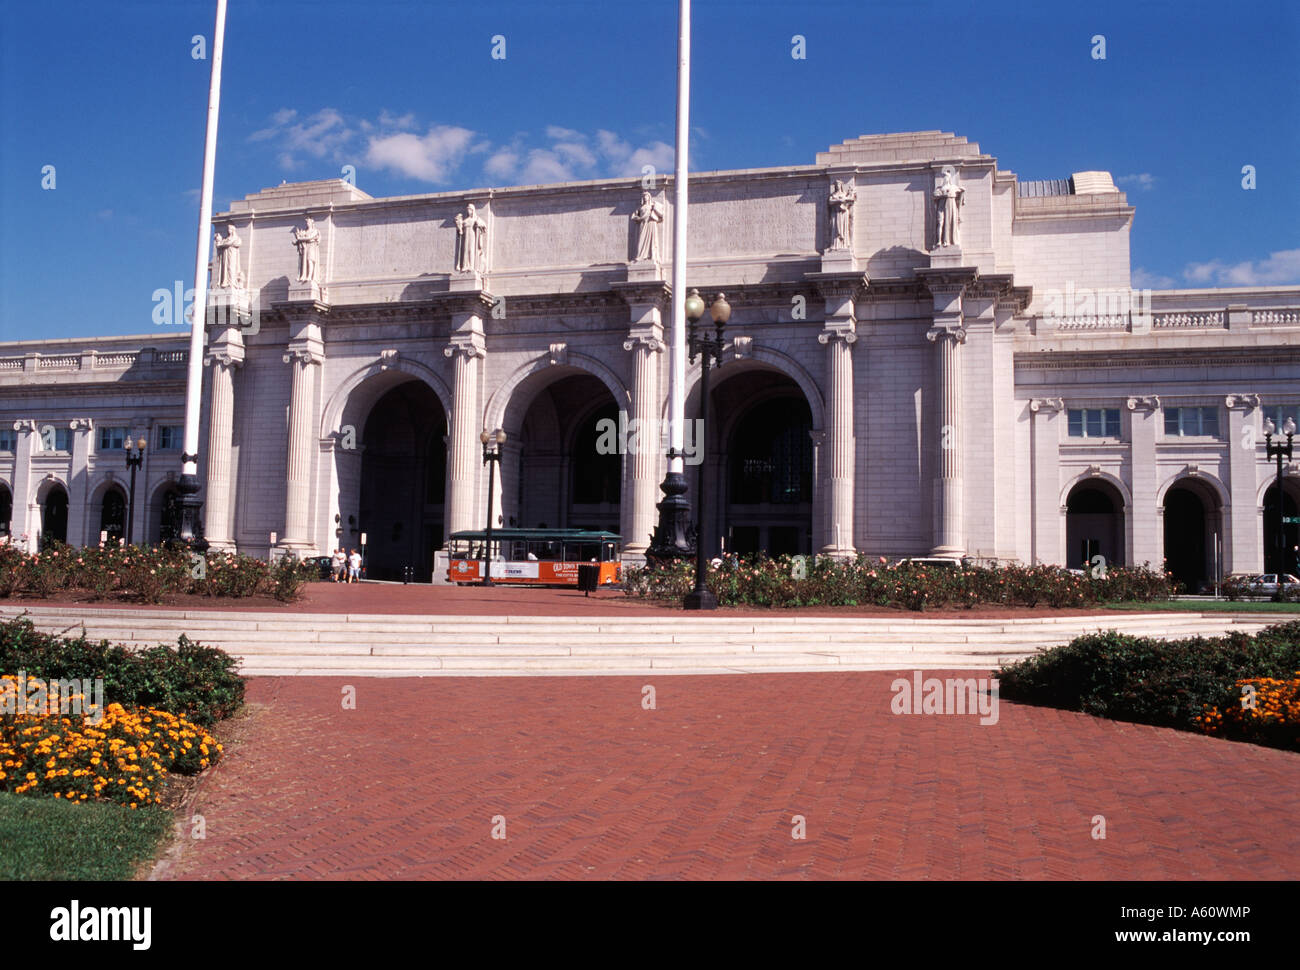 Union Station, Washington, D.C. Stock Photo